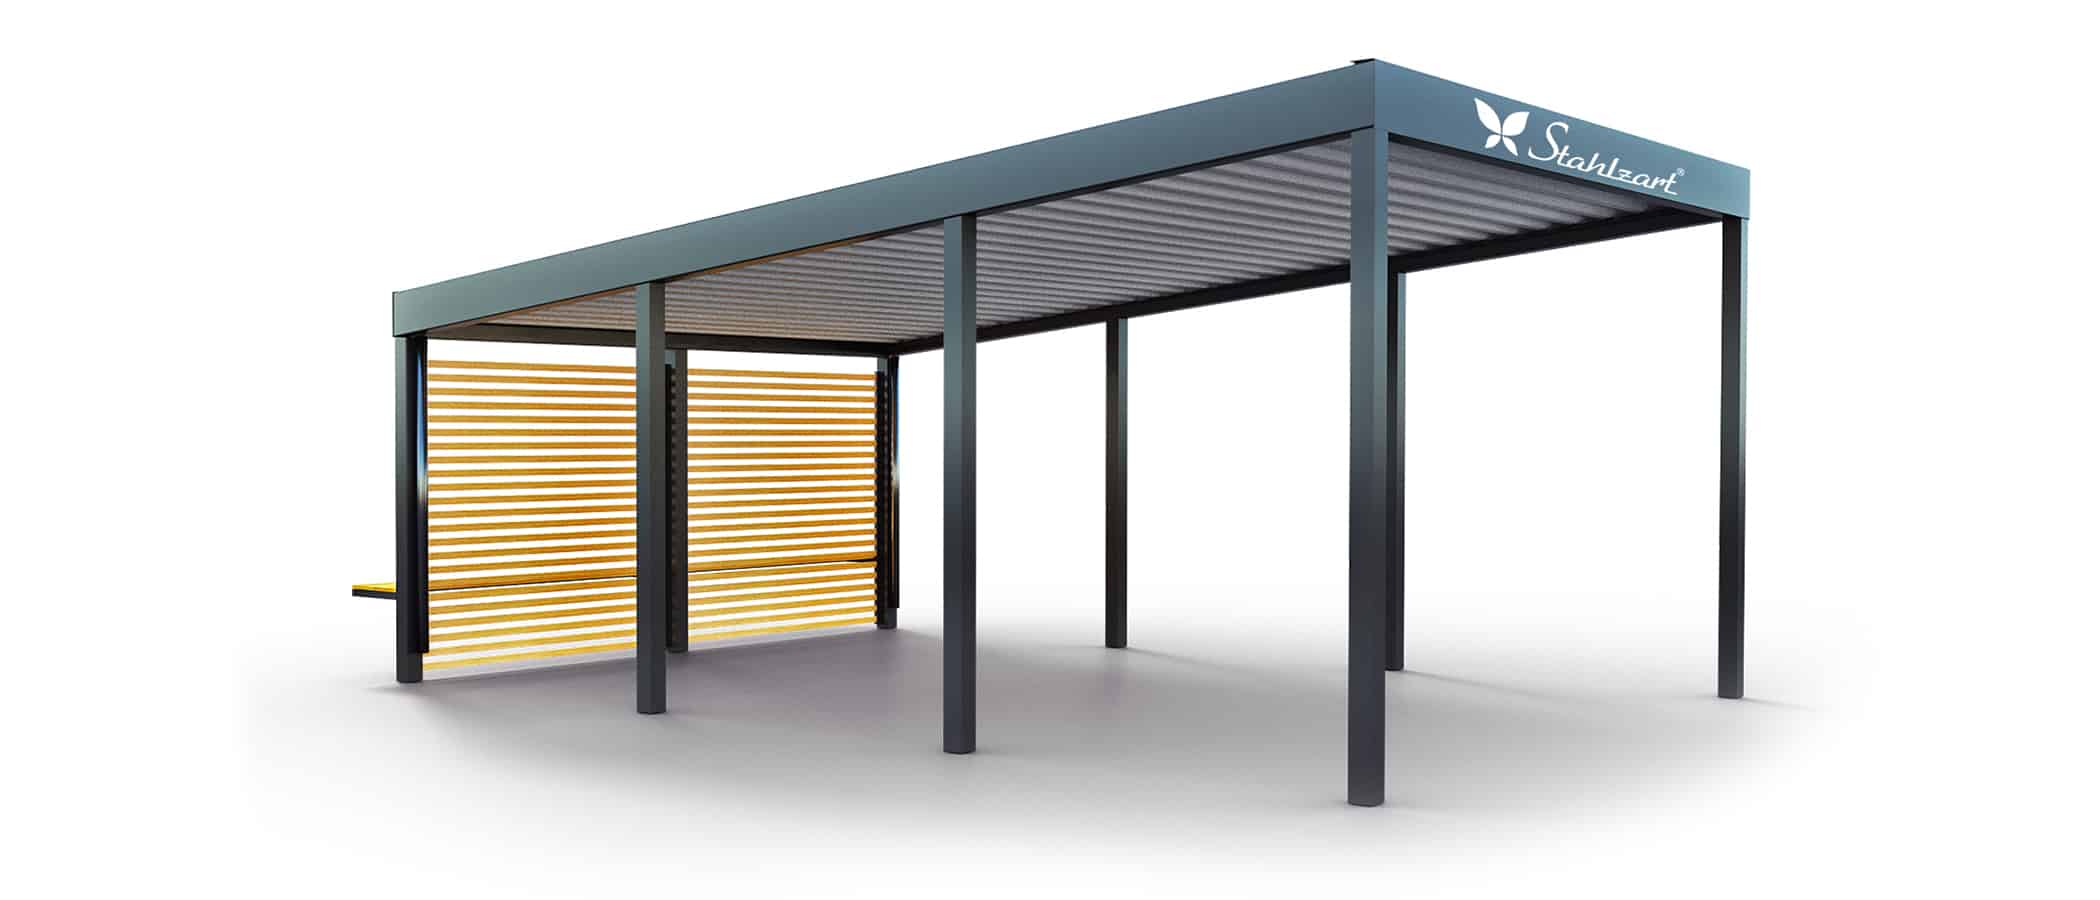 solar-carport-mit-pultdach-carports-solarcarport-pultdach-carportdach-design-strom-angebot-photovoltaikanlage-module-solardach-dachflaeche-metall-stahl-holz-seitenwand-mit-sitzbank-stahlzart